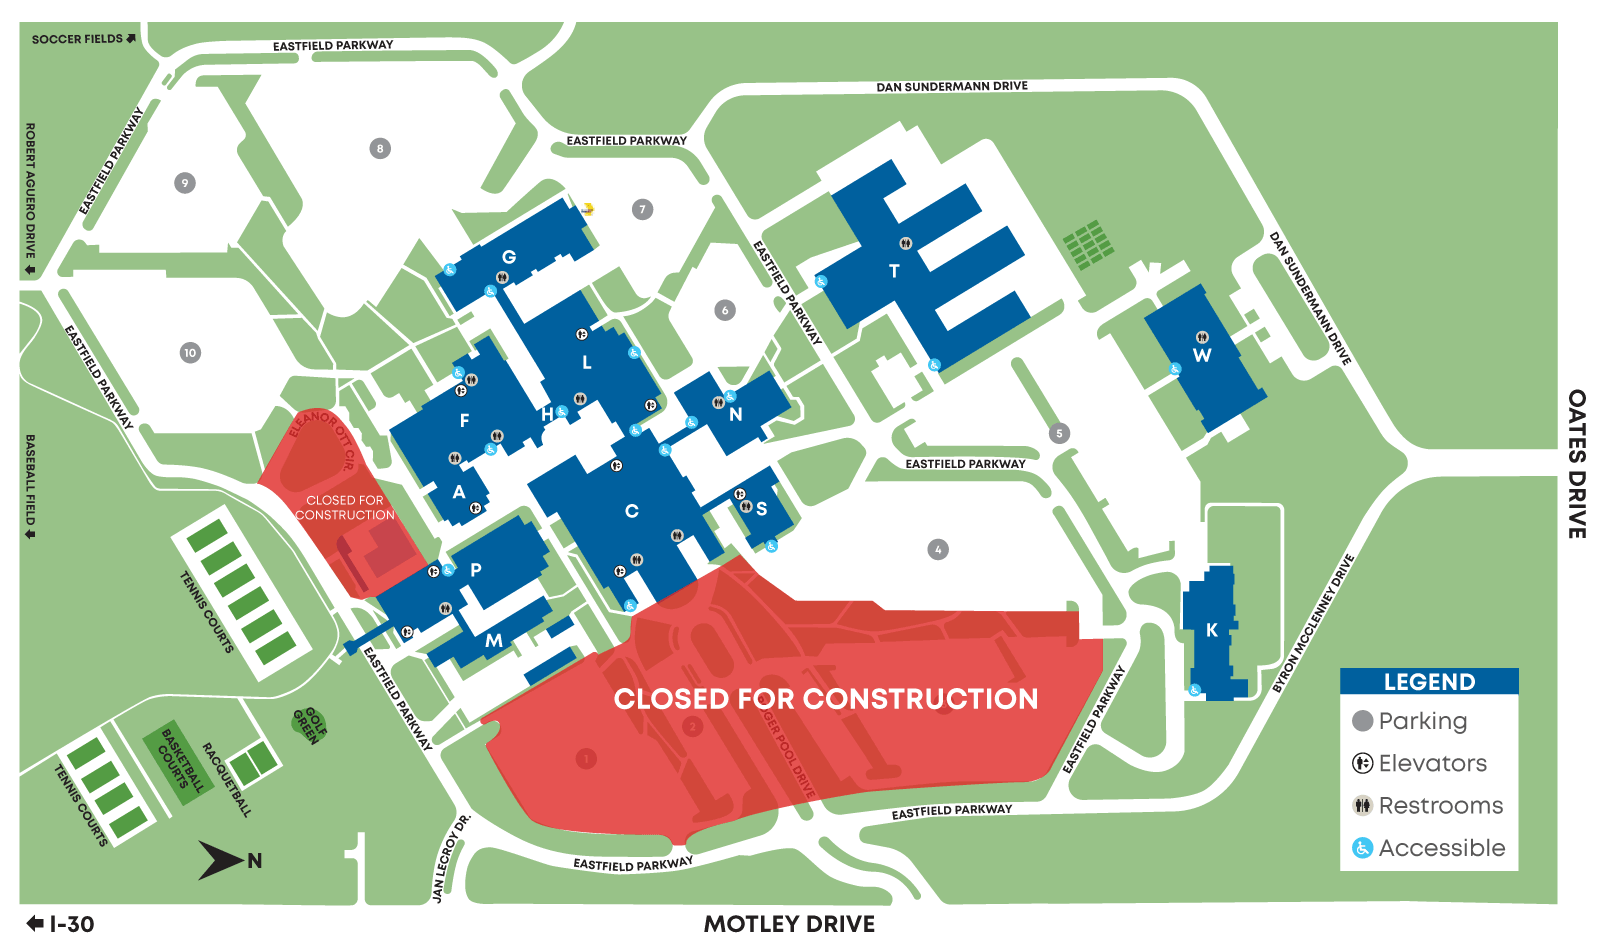 Brookhaven Maps and Location – Dallas College